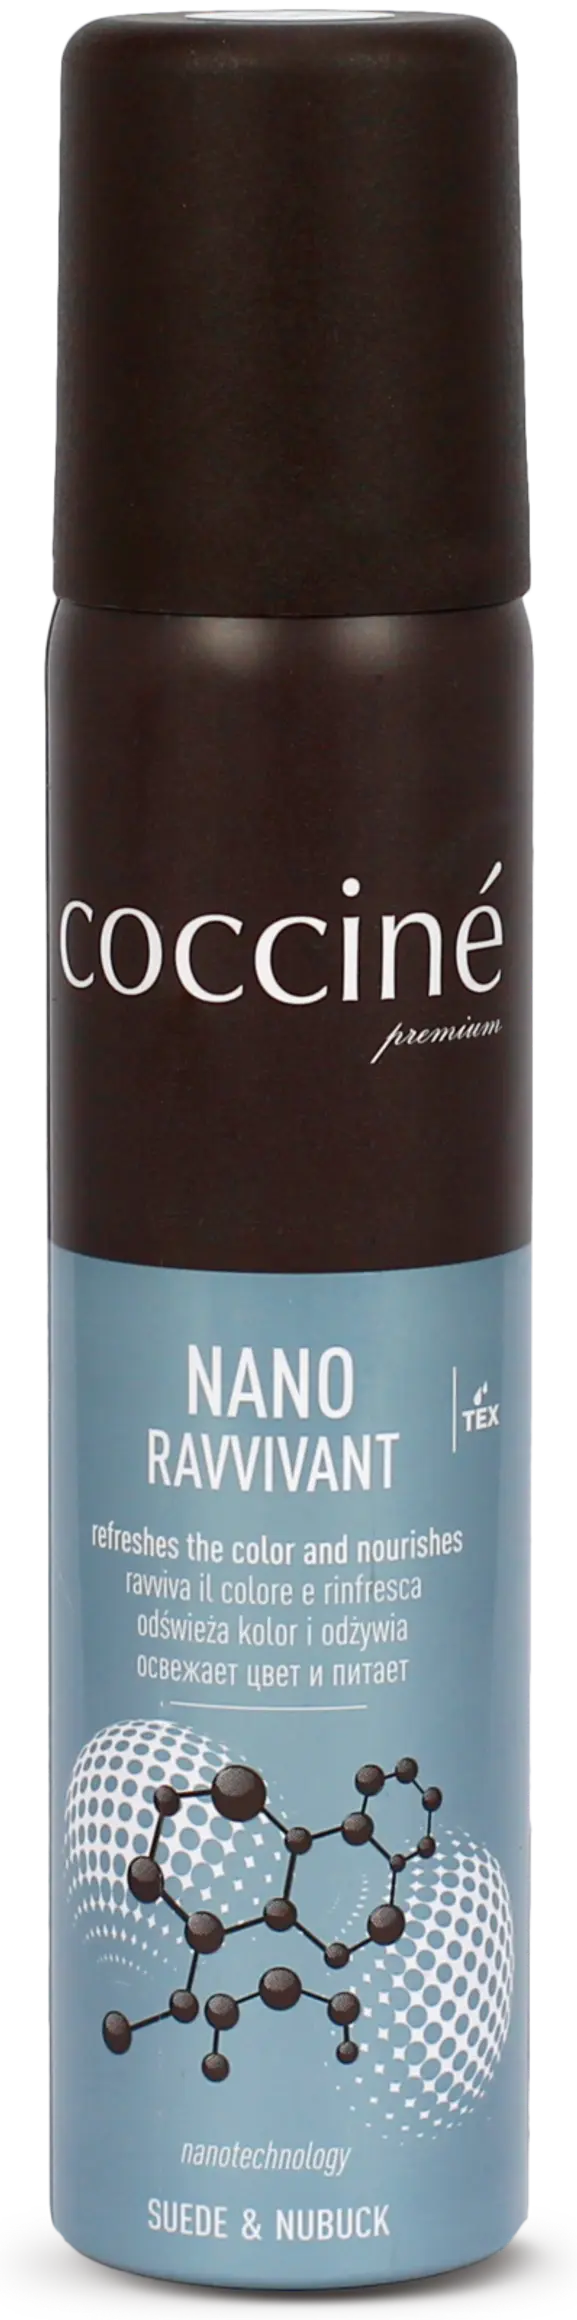 Coccine Nano Ravvivant hoitoaine mokkanahalle ja nupukille 100 ml, neutral